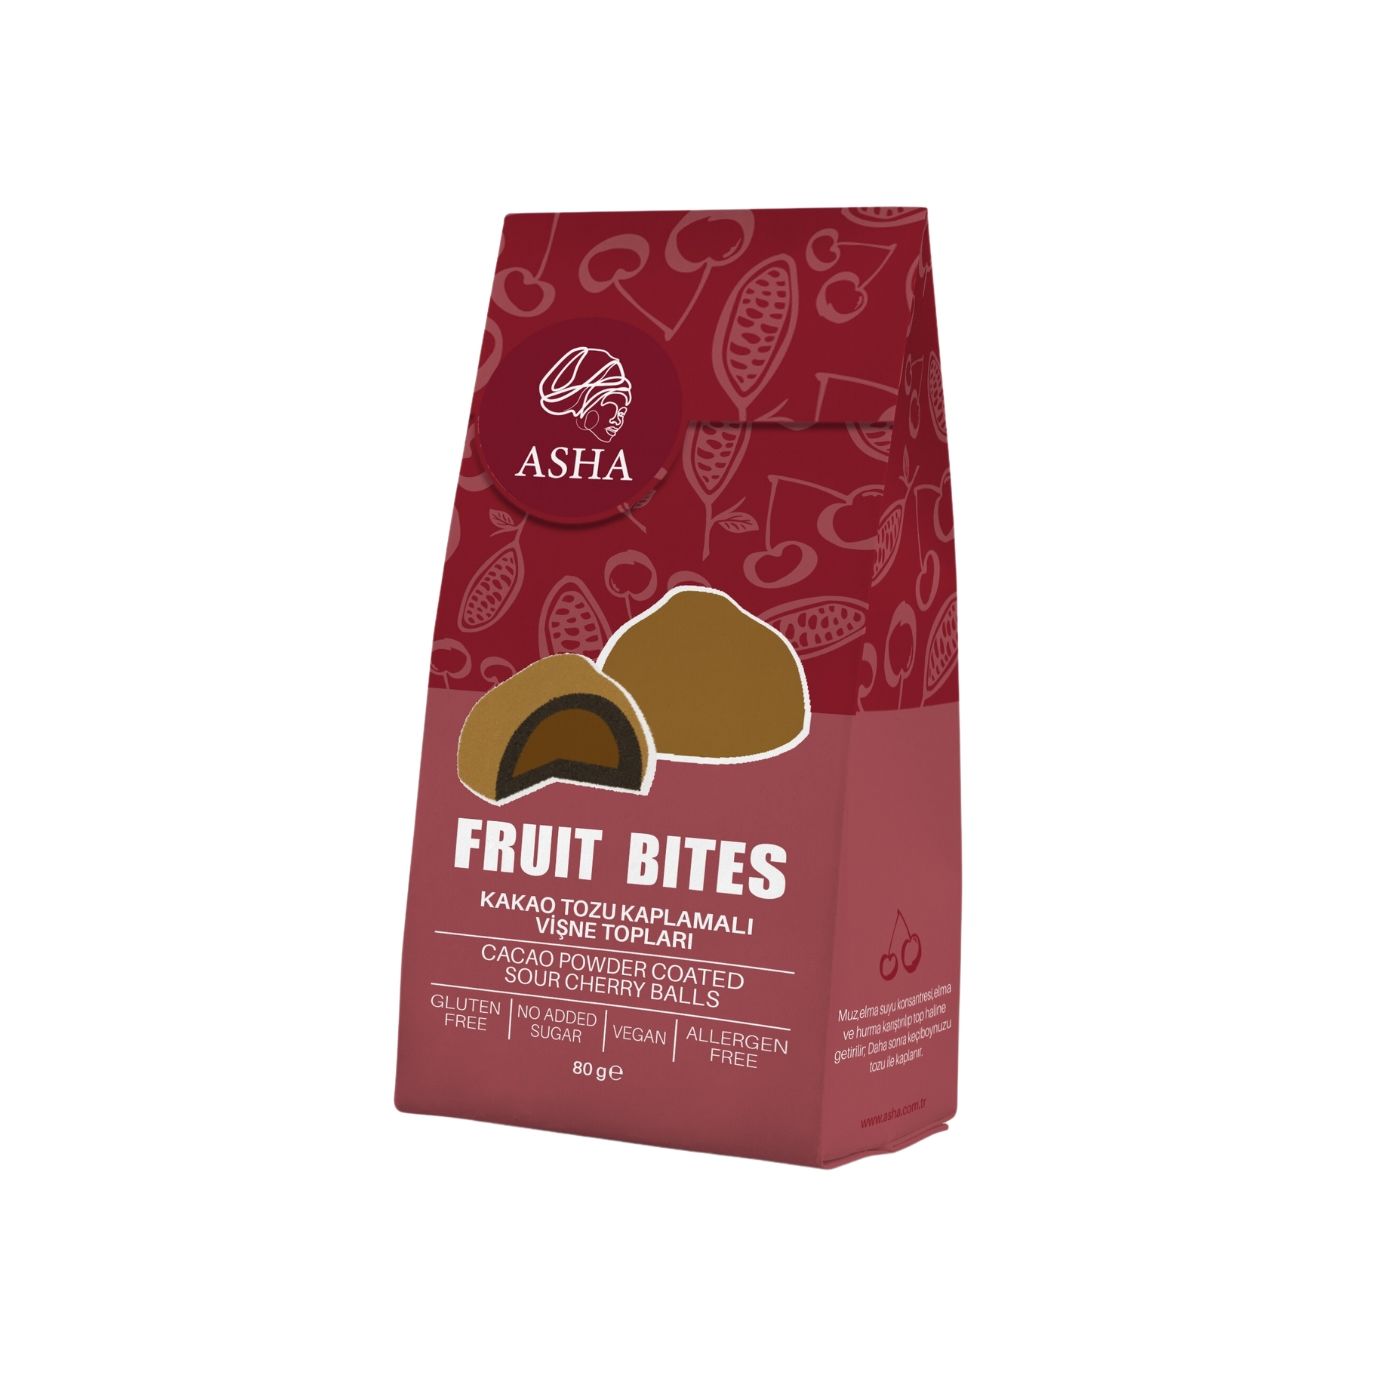 Asha Fruit Bites Kakao Tozlu Kaplamalı Vişne Topları